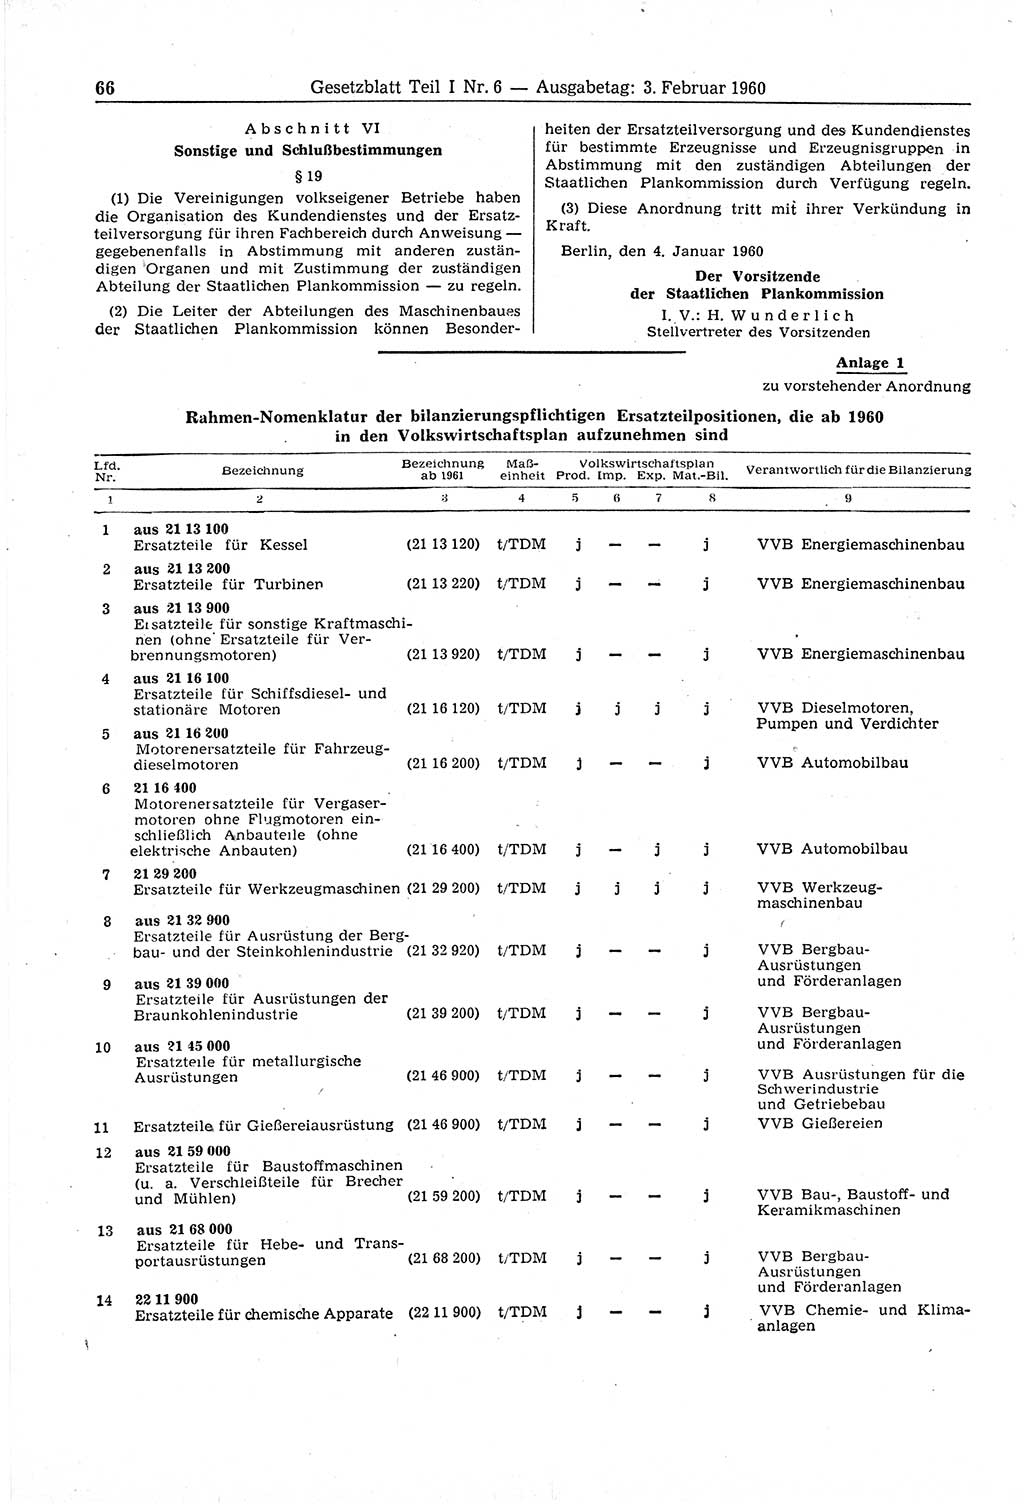 Gesetzblatt (GBl.) der Deutschen Demokratischen Republik (DDR) Teil Ⅰ 1960, Seite 66 (GBl. DDR Ⅰ 1960, S. 66)